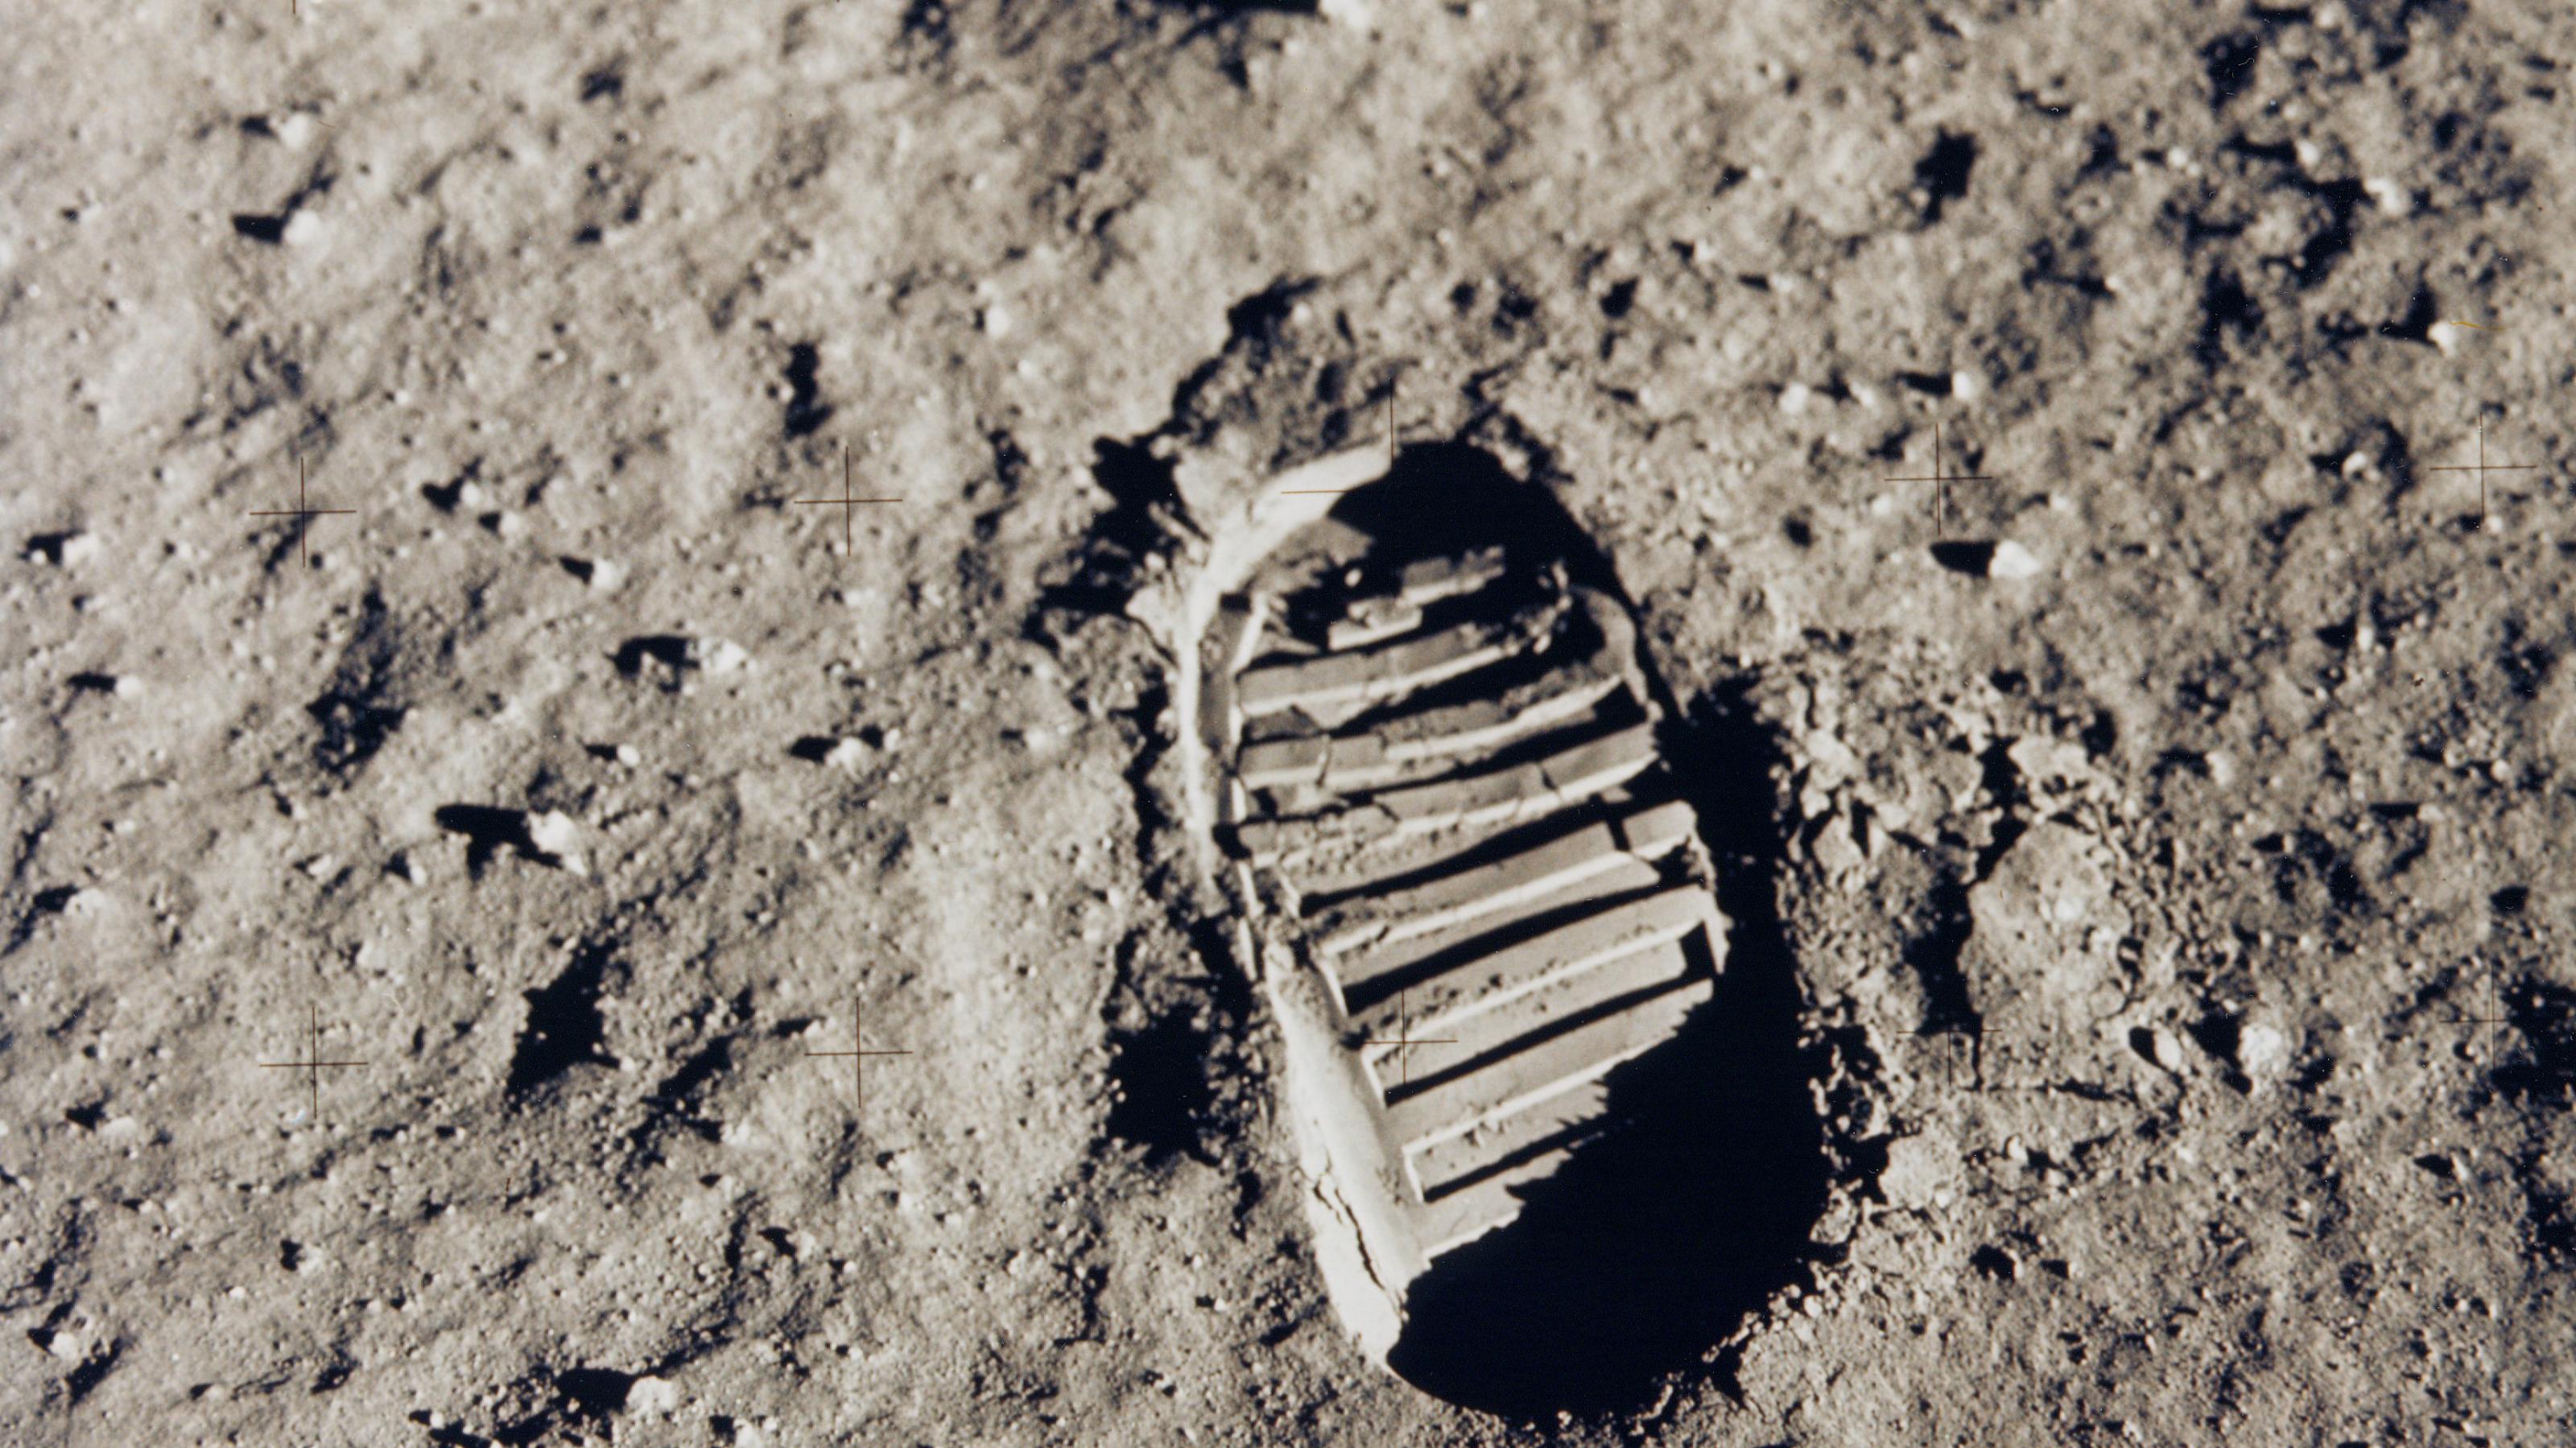 Fußabdruck im hellgrauen, puderigen Mondstaub, mit gut erkennbarem rillenförmigen Profil des Astronautenstiefels